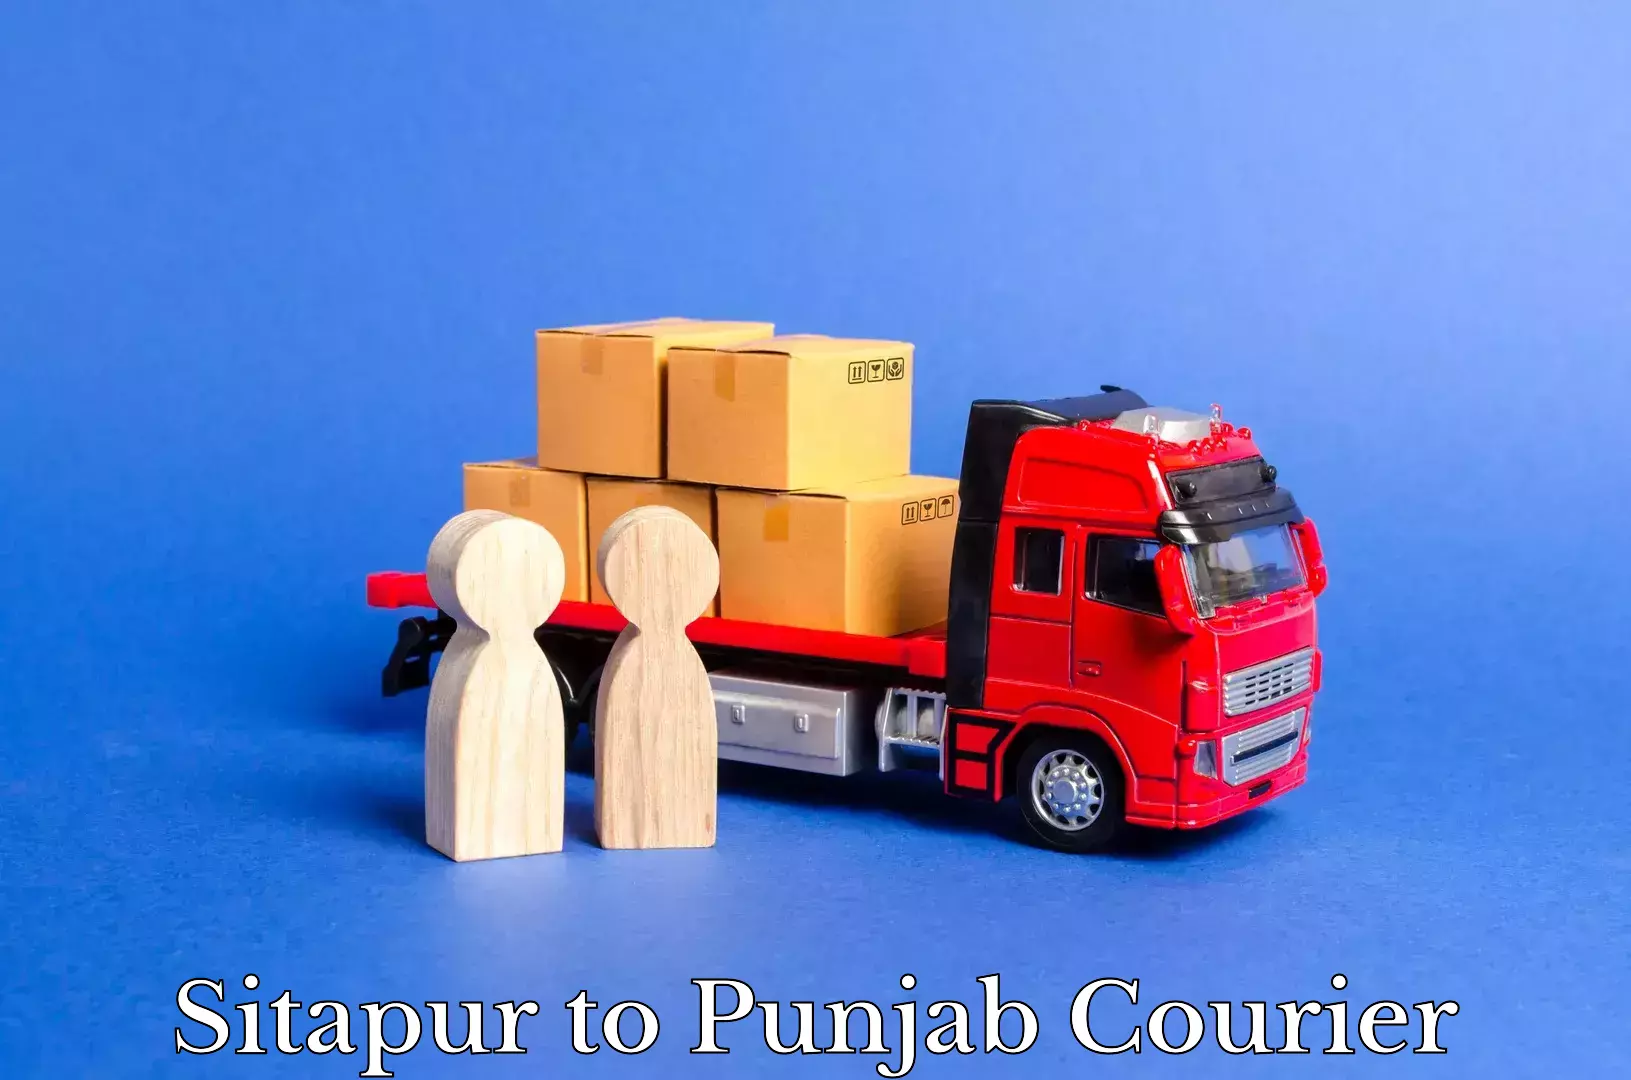 Courier service comparison Sitapur to Punjab